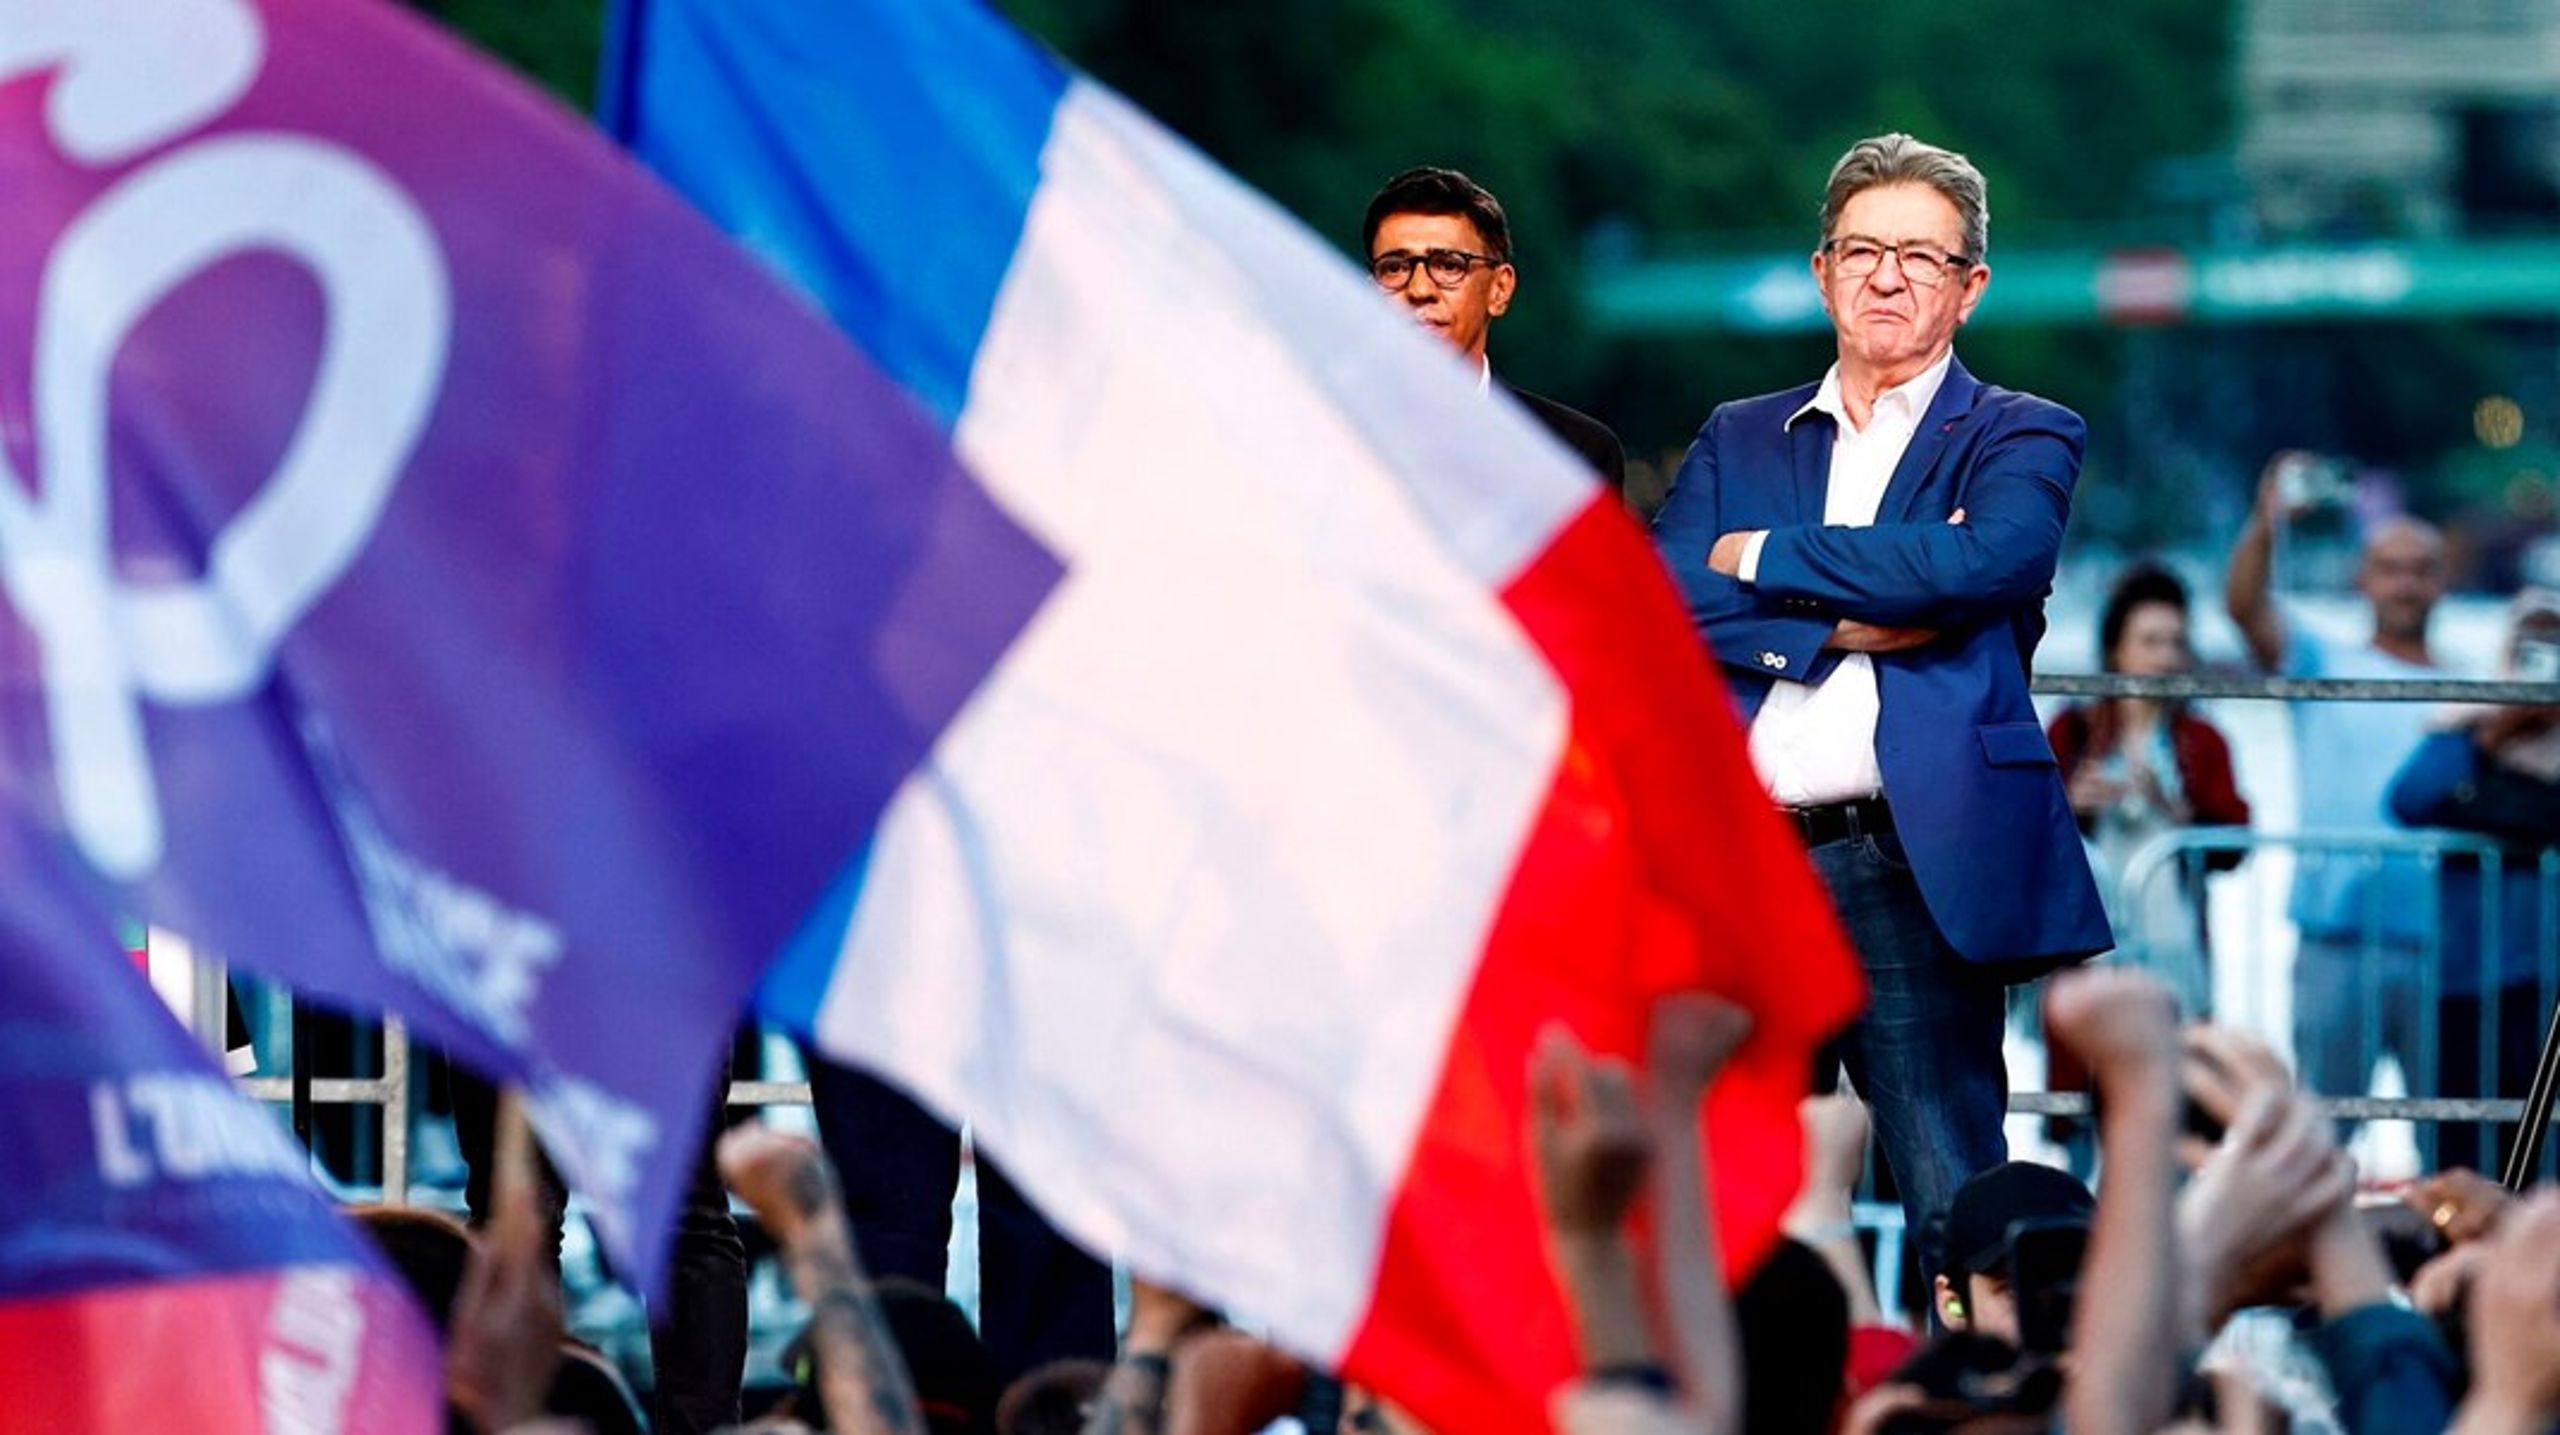 Lederen af venstrefløjspartiet La France Insoumise, Jean-Luc Mélenchon (t.h.), udnævnte sig selv til valgets vinder og præsident Macron til taber. Det er langtfra alle, der er enige med ham i det.